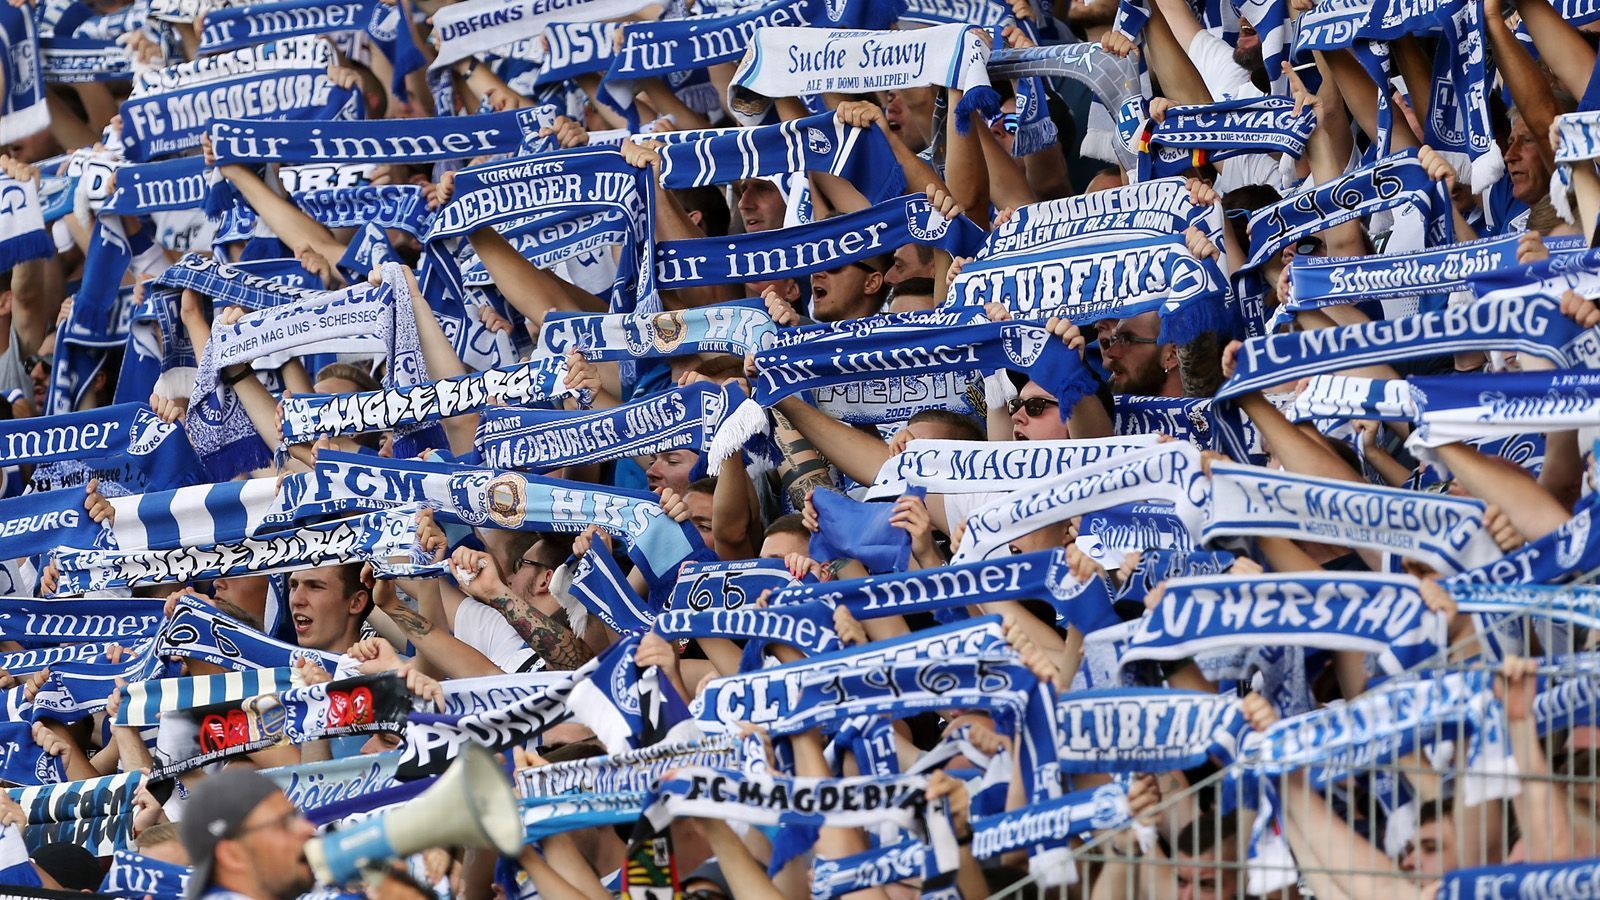 
                <strong>1. FC Magdeburg</strong><br>
                Der Verein aus Sachsen-Anhalt hat seine Profi-Abteilung in die 1. FC Magdeburg Spielbetriebs GmbH ausgegliedert. Vor sieben Jahren verhandelten die Verantwortlichen mit einem Investor und dessen Einstieg mit 30 Millionen Euro. Letztendlich entschieden sich die Magdeburger gegen den Investor. Bis heute ist der Verein zu 100 % im Besitz der GmbH.
              